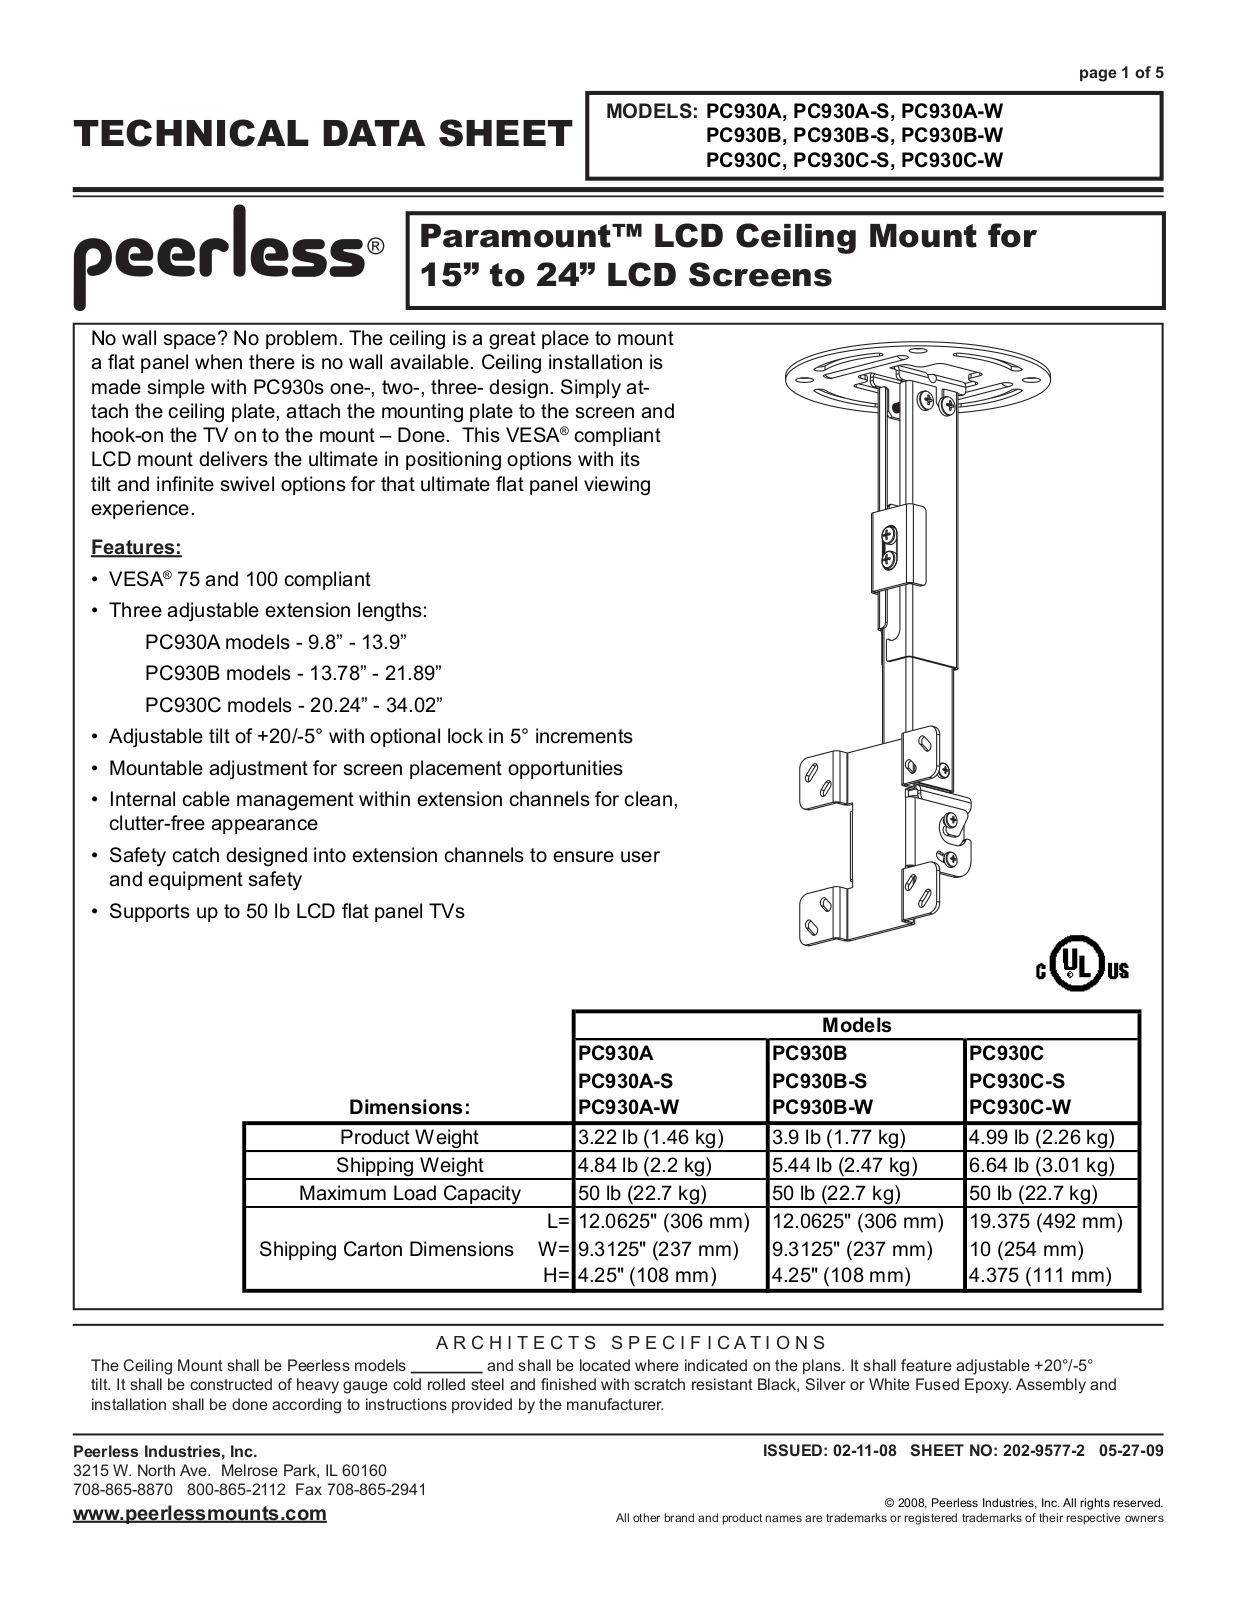 Peerless Industries PC930C, PC930A-W, PC930B-W, PC930C-W, PC930B User Manual